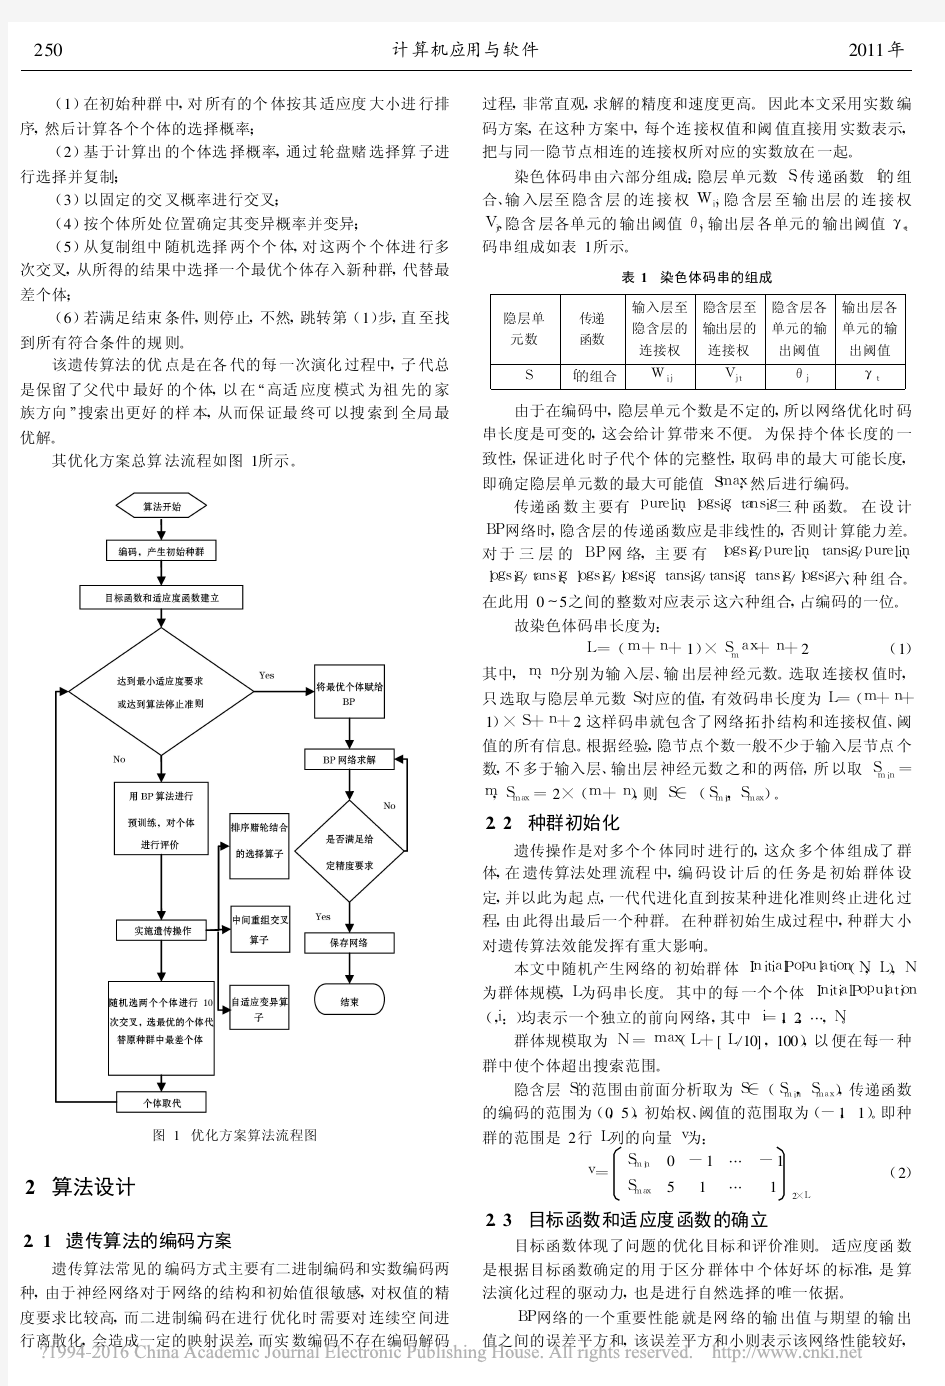 基于改进遗传算法的神经网络优化设计_胡仁平